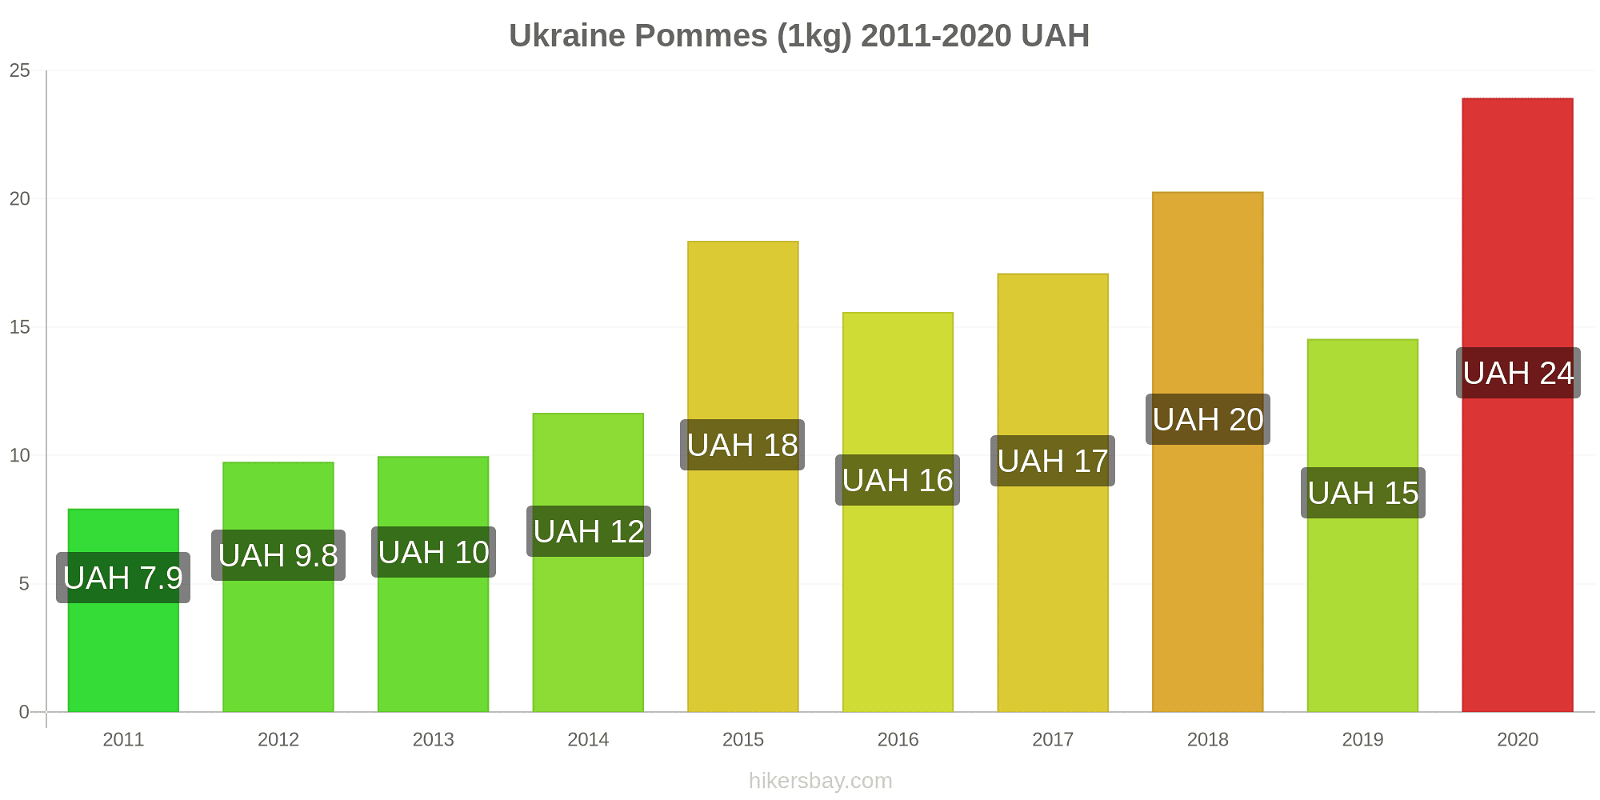 Ukraine changements de prix Pommes (1kg) hikersbay.com